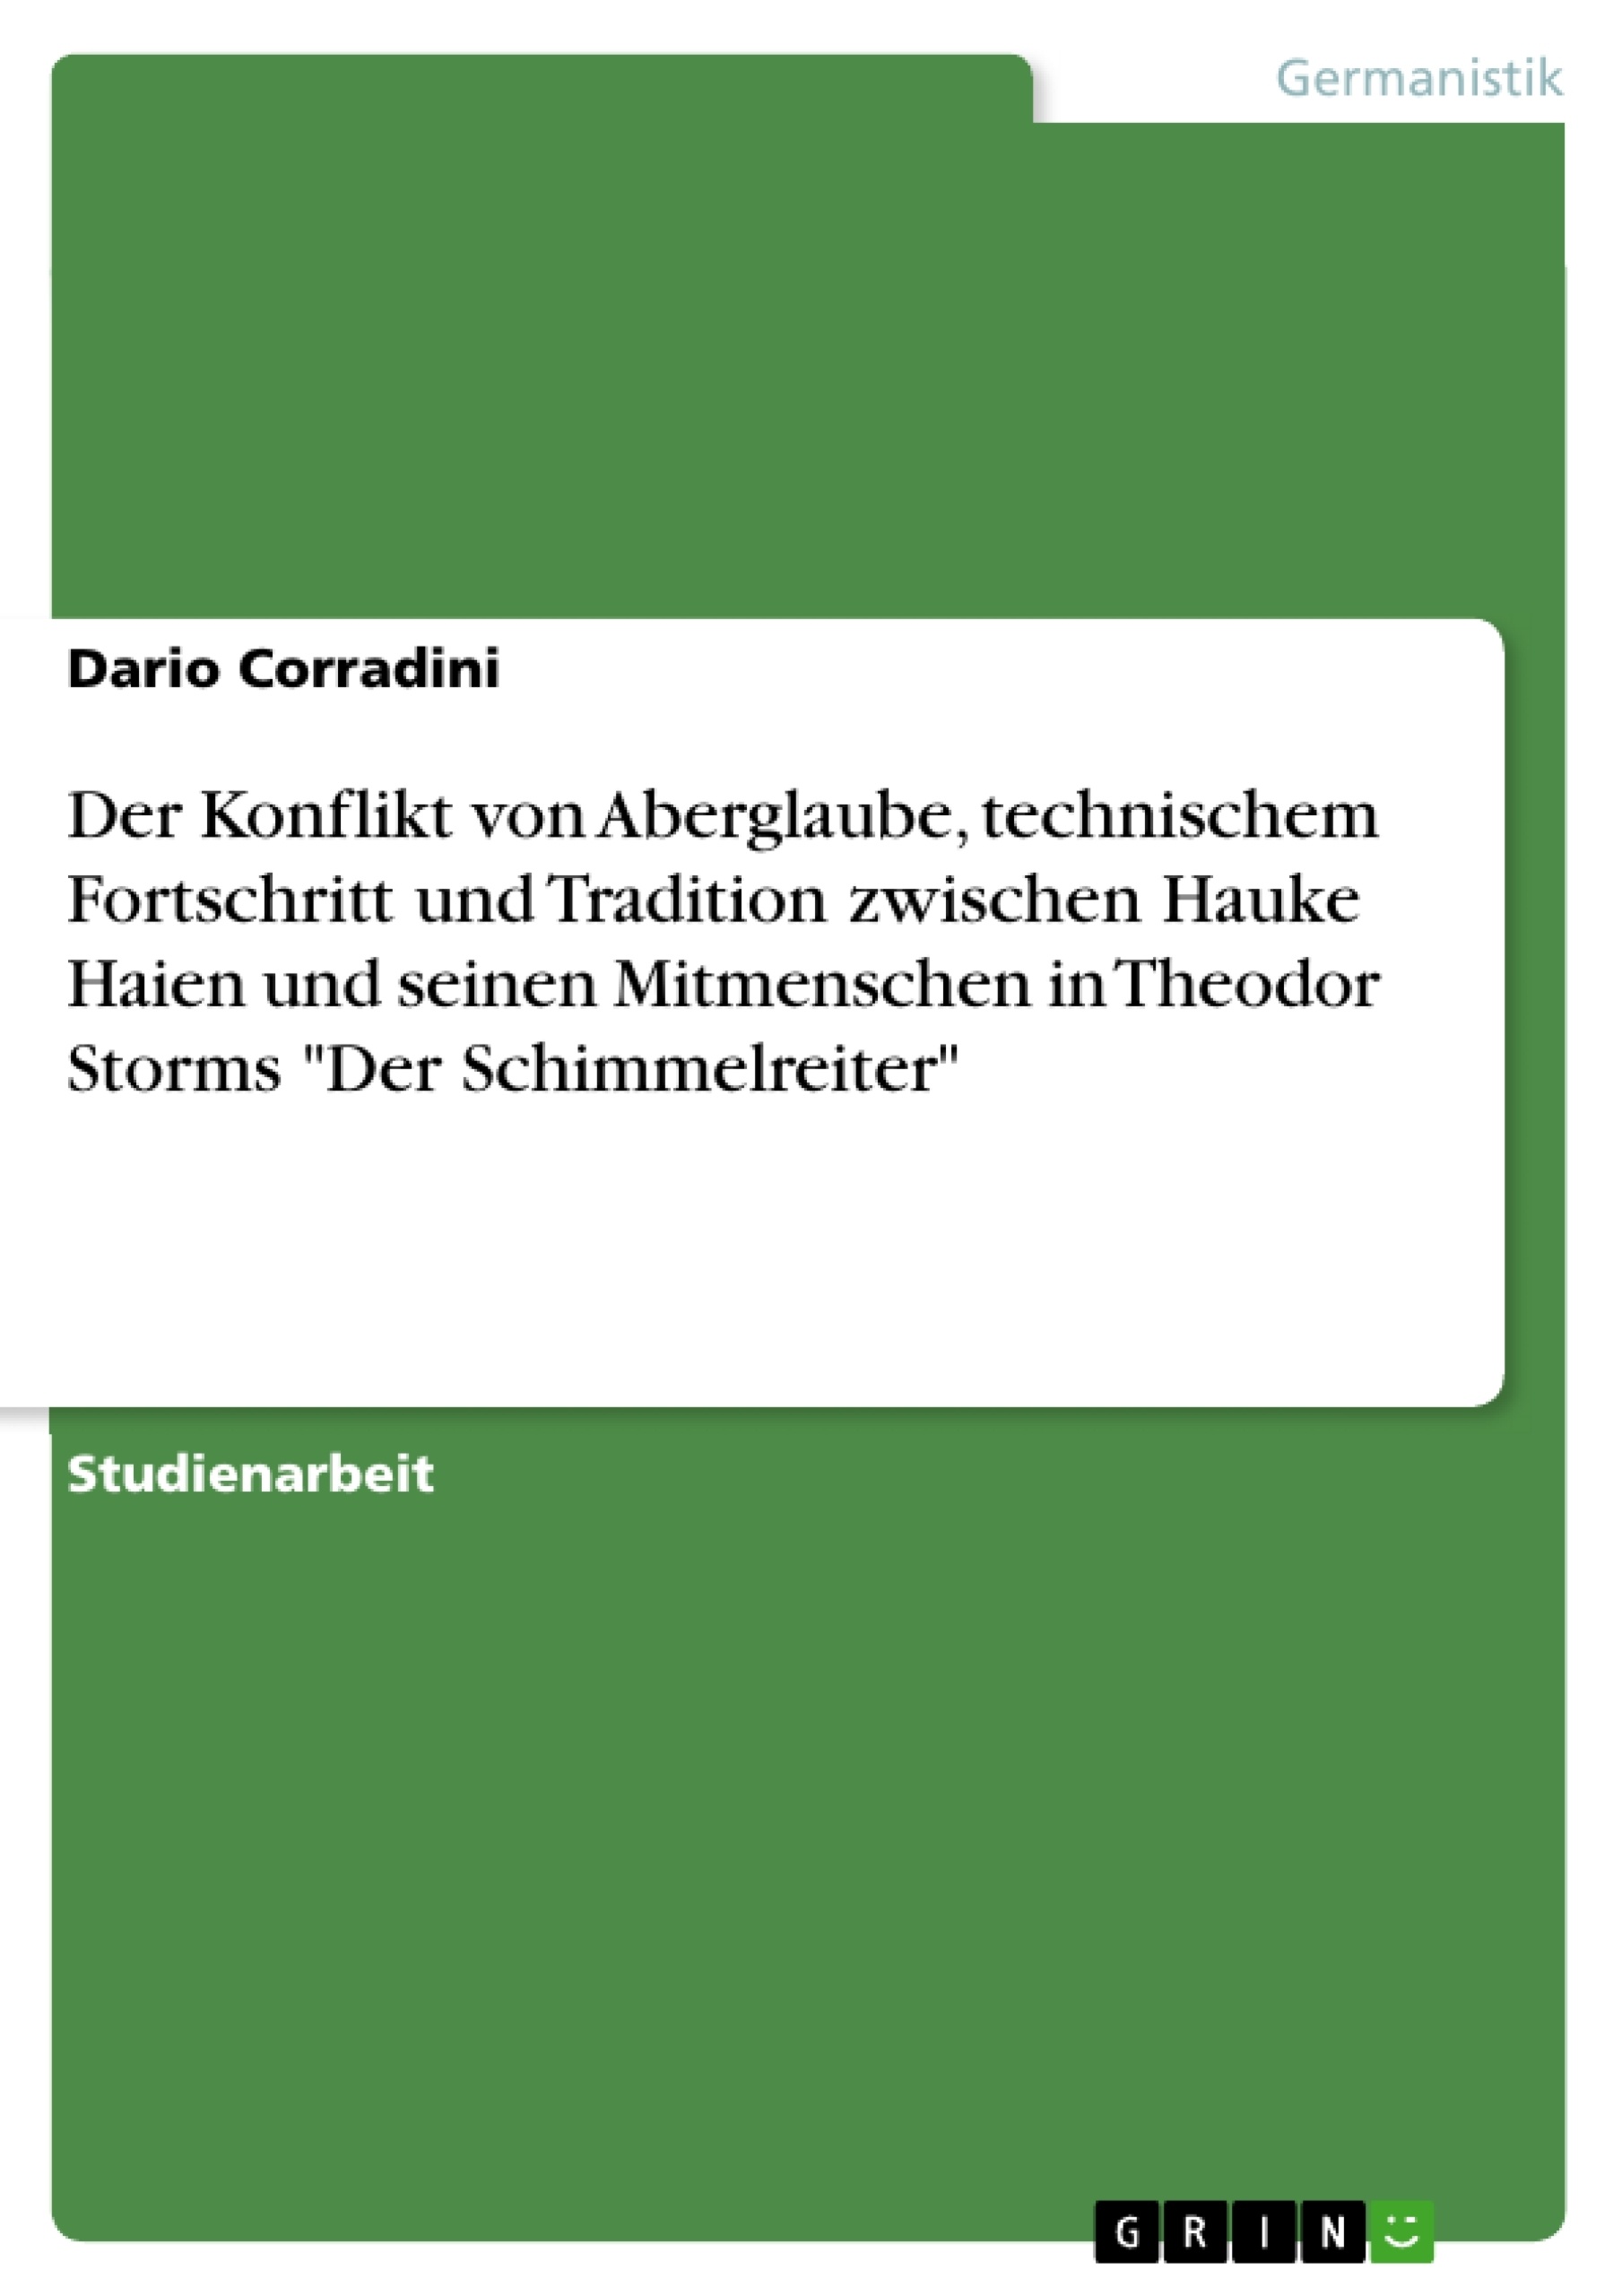 Titel: Der Konflikt von Aberglaube, technischem Fortschritt und Tradition zwischen Hauke Haien und seinen Mitmenschen in Theodor Storms "Der Schimmelreiter"